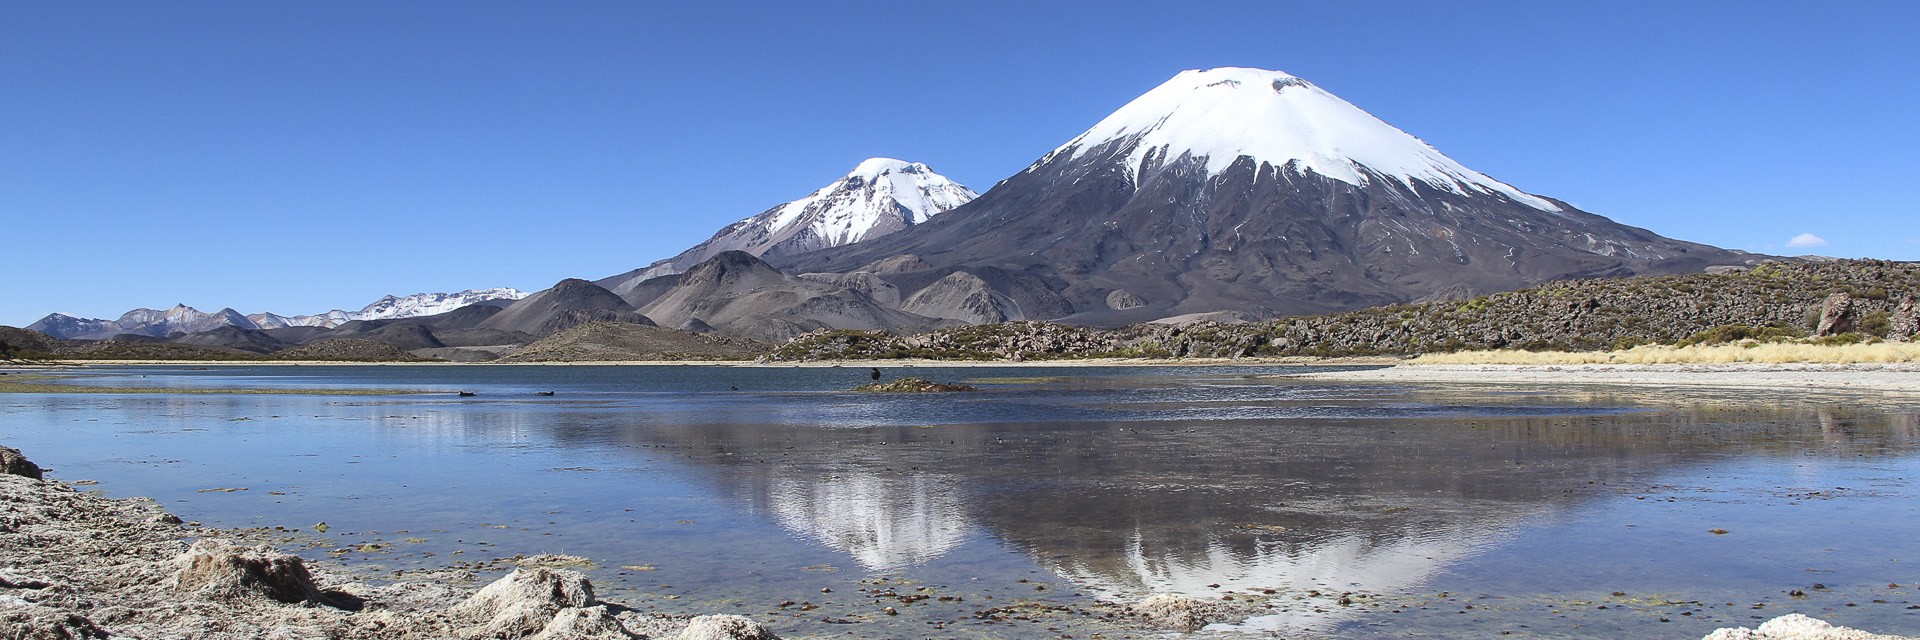 Cile&Bolivia